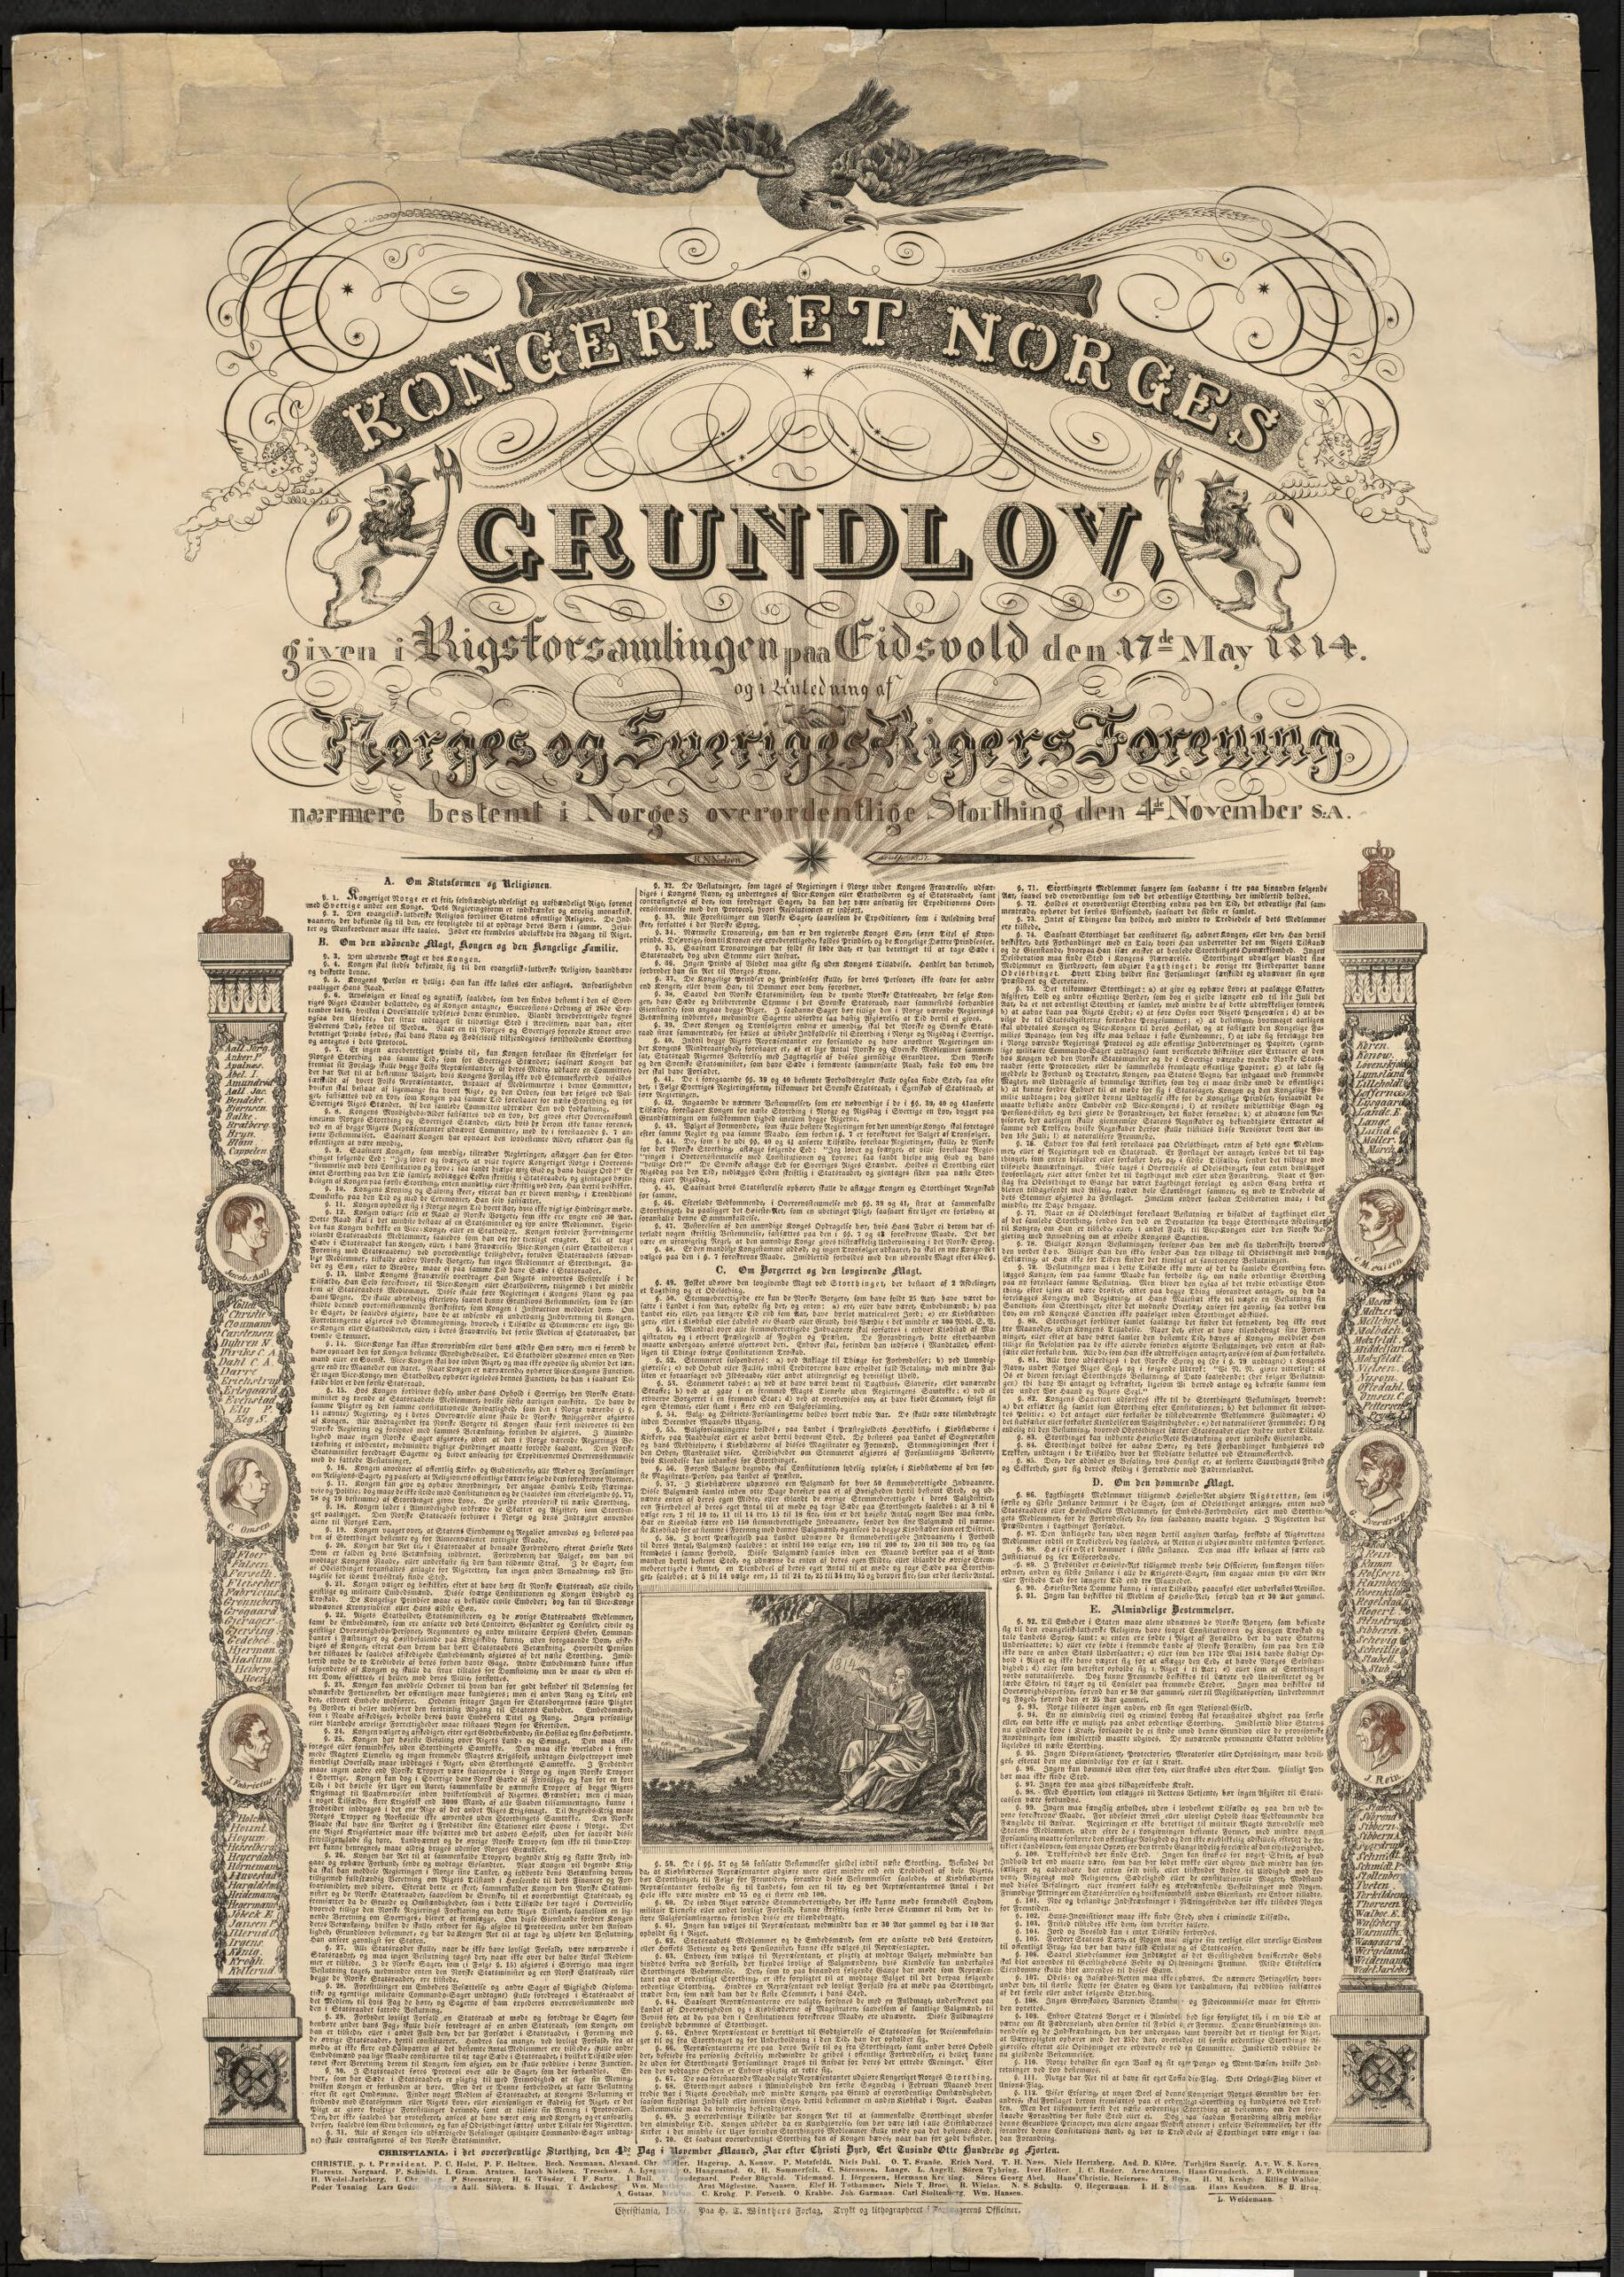 Grunnlovsplakat fra 1837 - tekst og mye ornamentikk